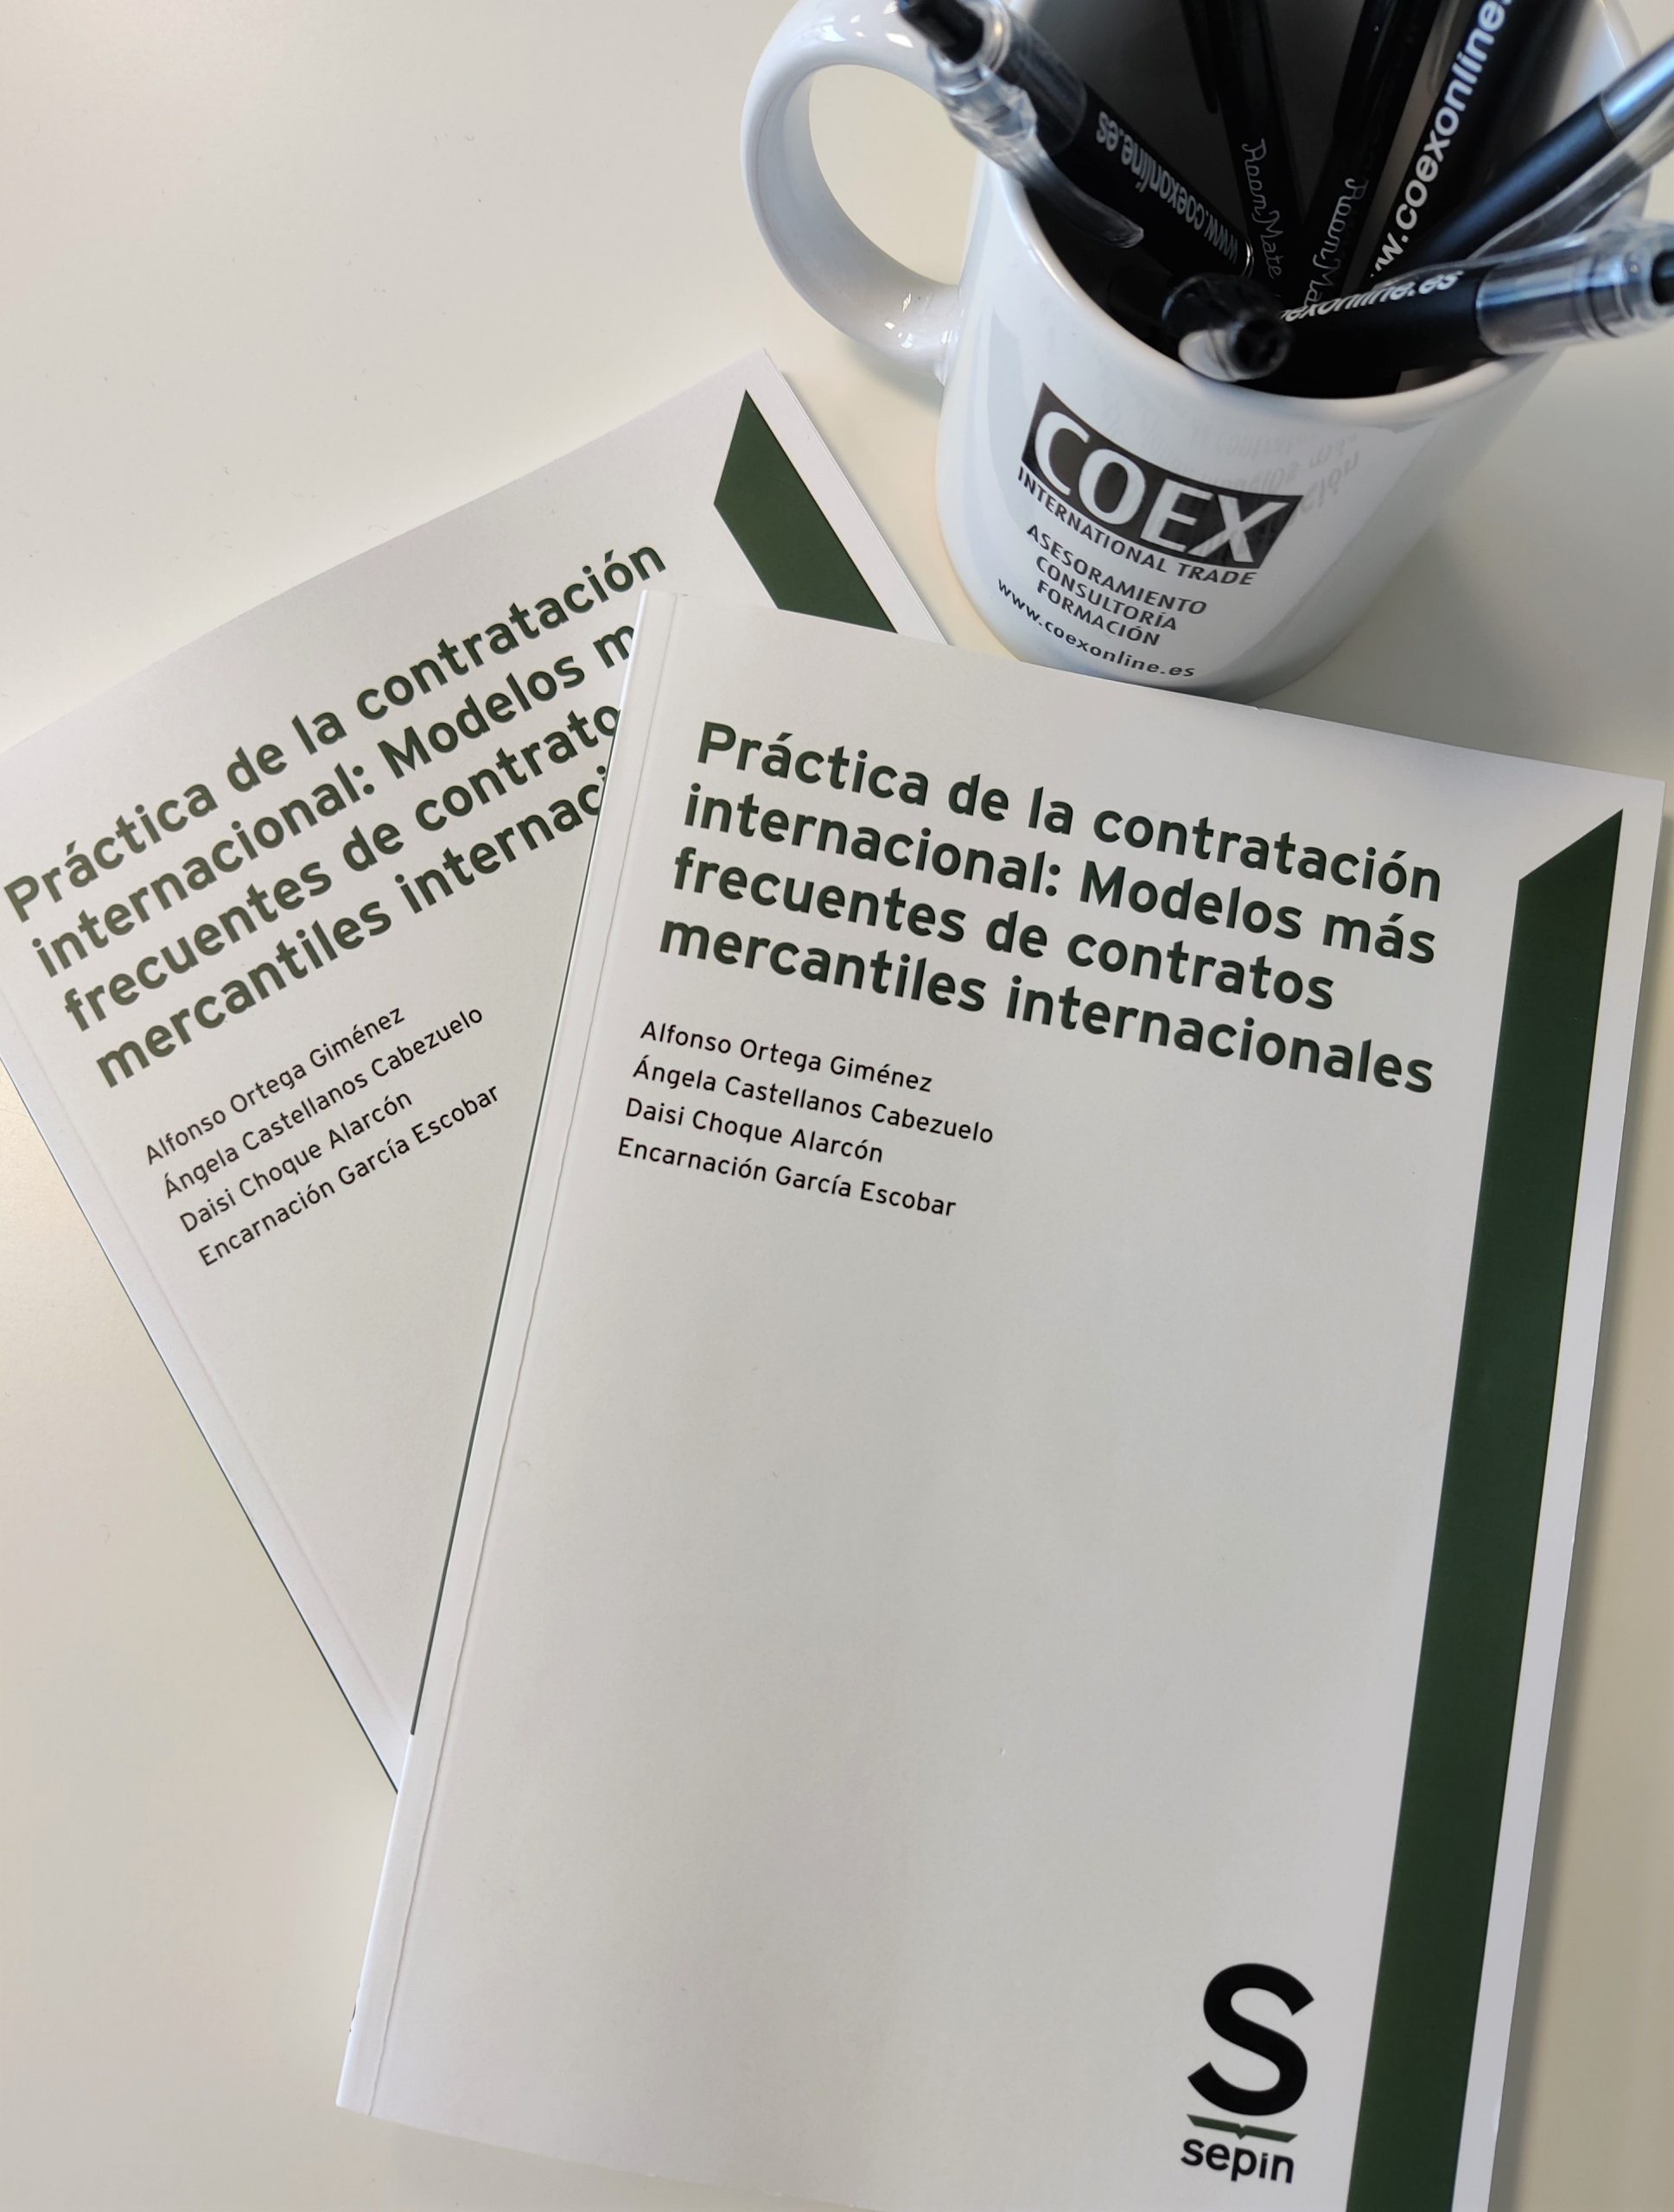 Featured image for “Práctica de la contratación internacional: importancia adquirida”